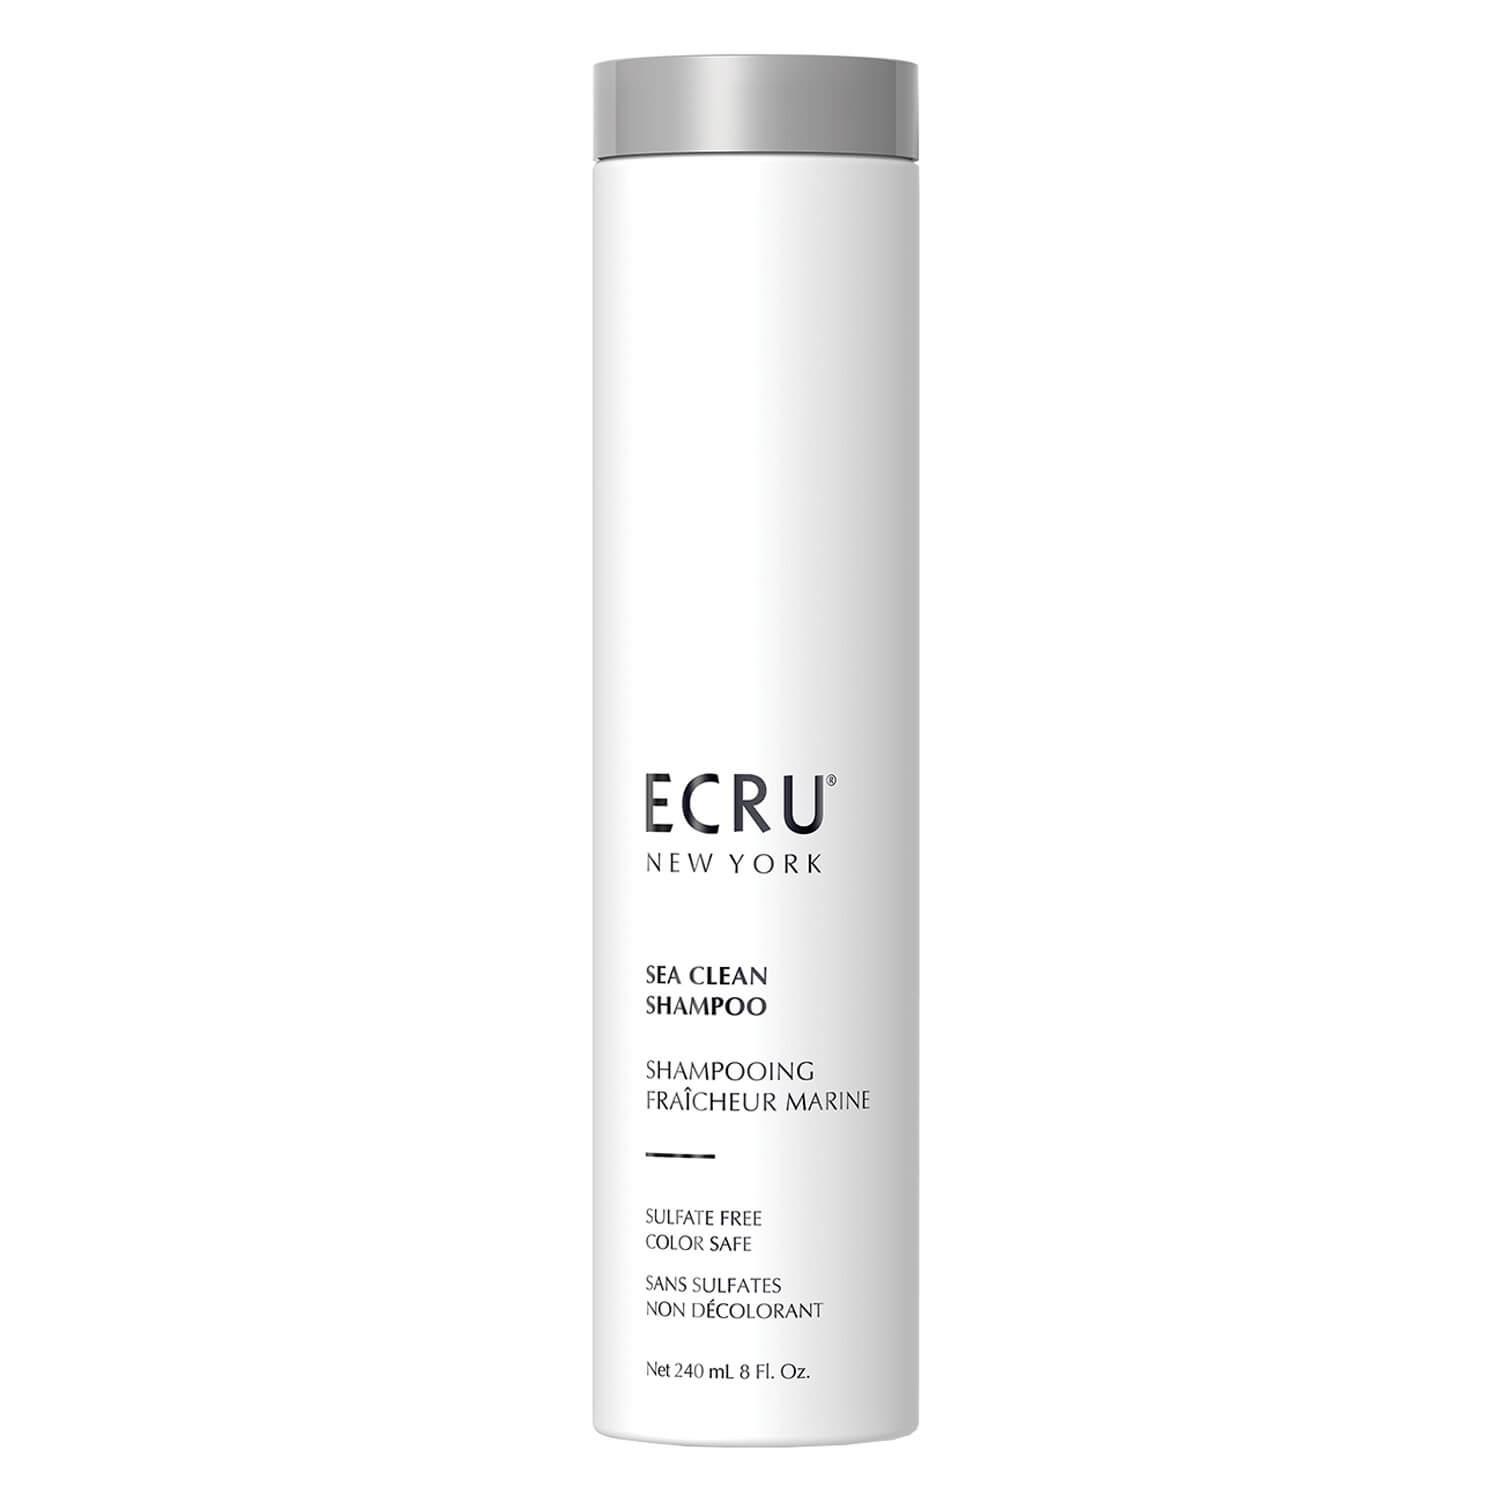 ECRU NY Signature - Sea Clean Shampoo